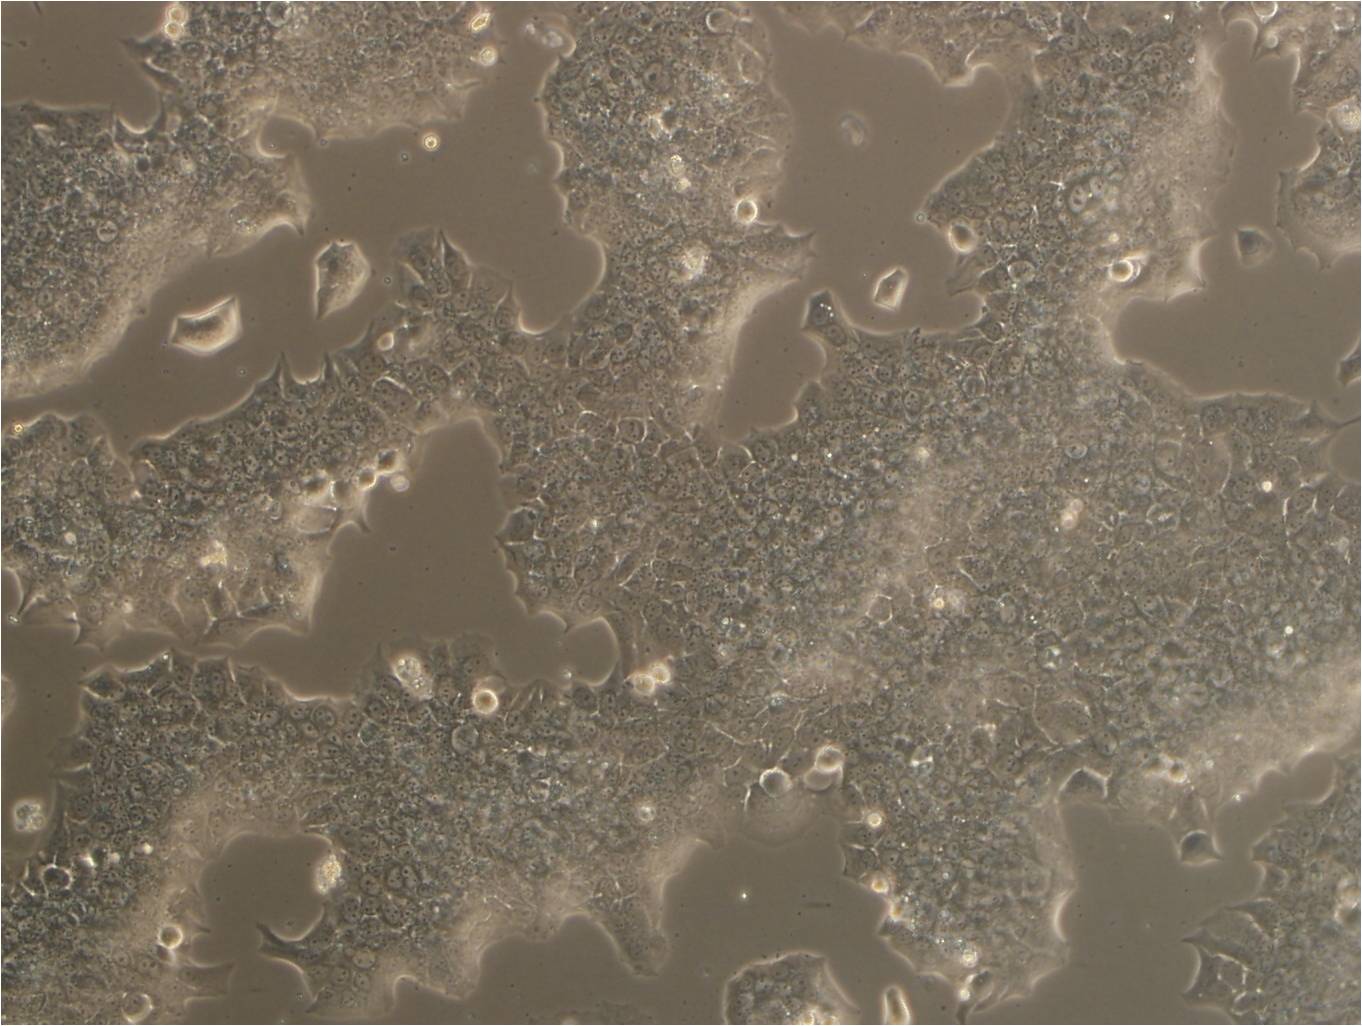 Vero C1008 epithelioid cells非洲绿猴肾细胞系,Vero C1008 epithelioid cells